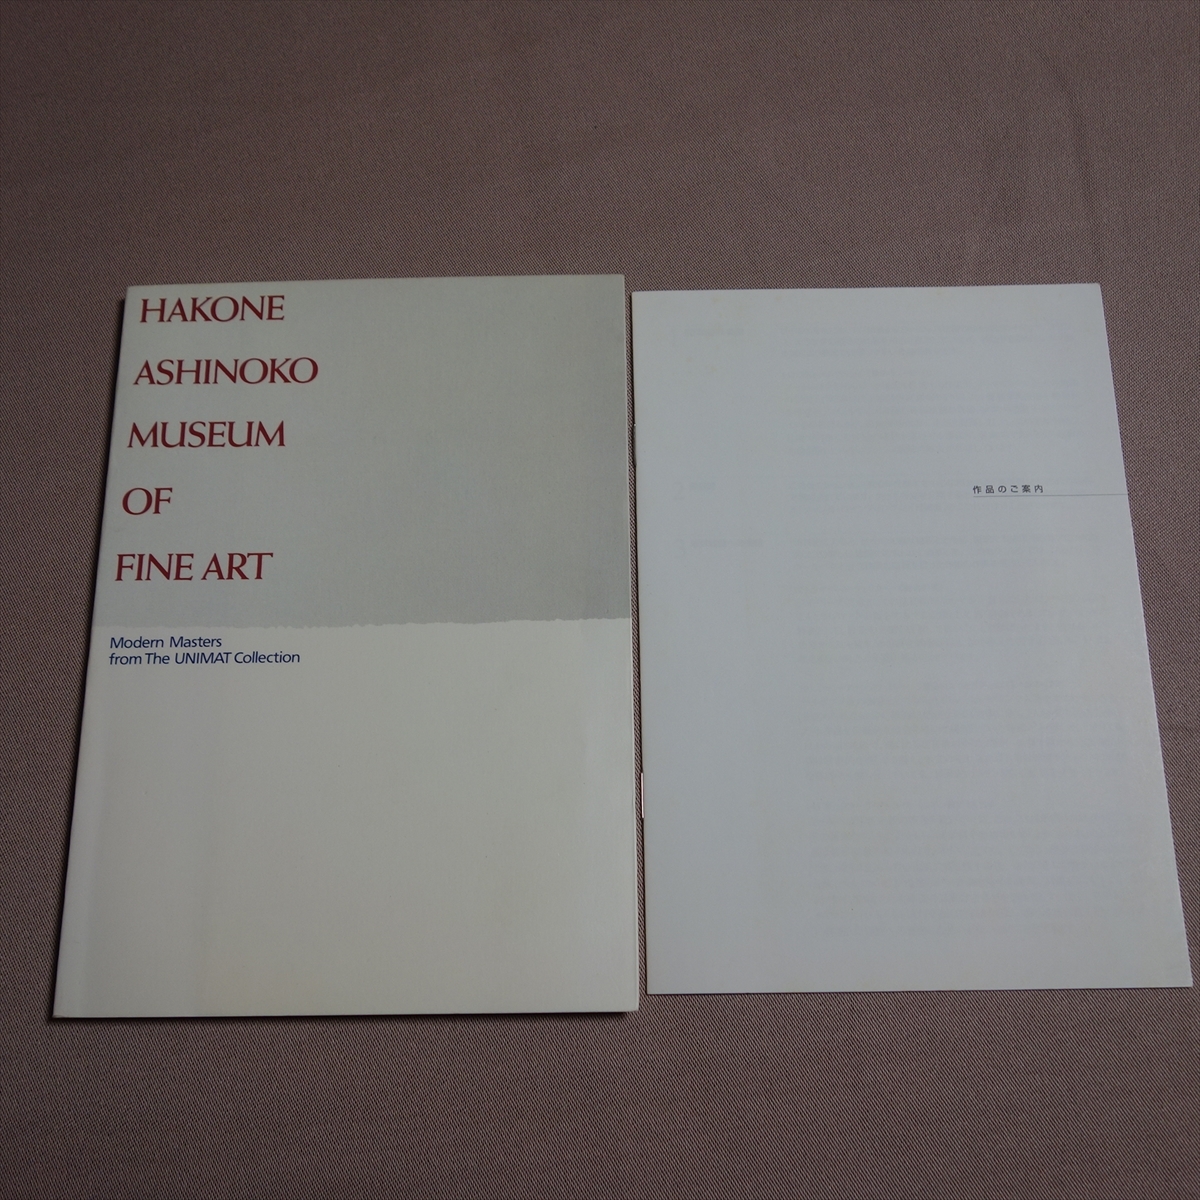 図録 HAKONE ASHINOKO MUSEUM of FINE ART 箱根芦ノ湖美術館, 絵画, 画集, 作品集, 図録